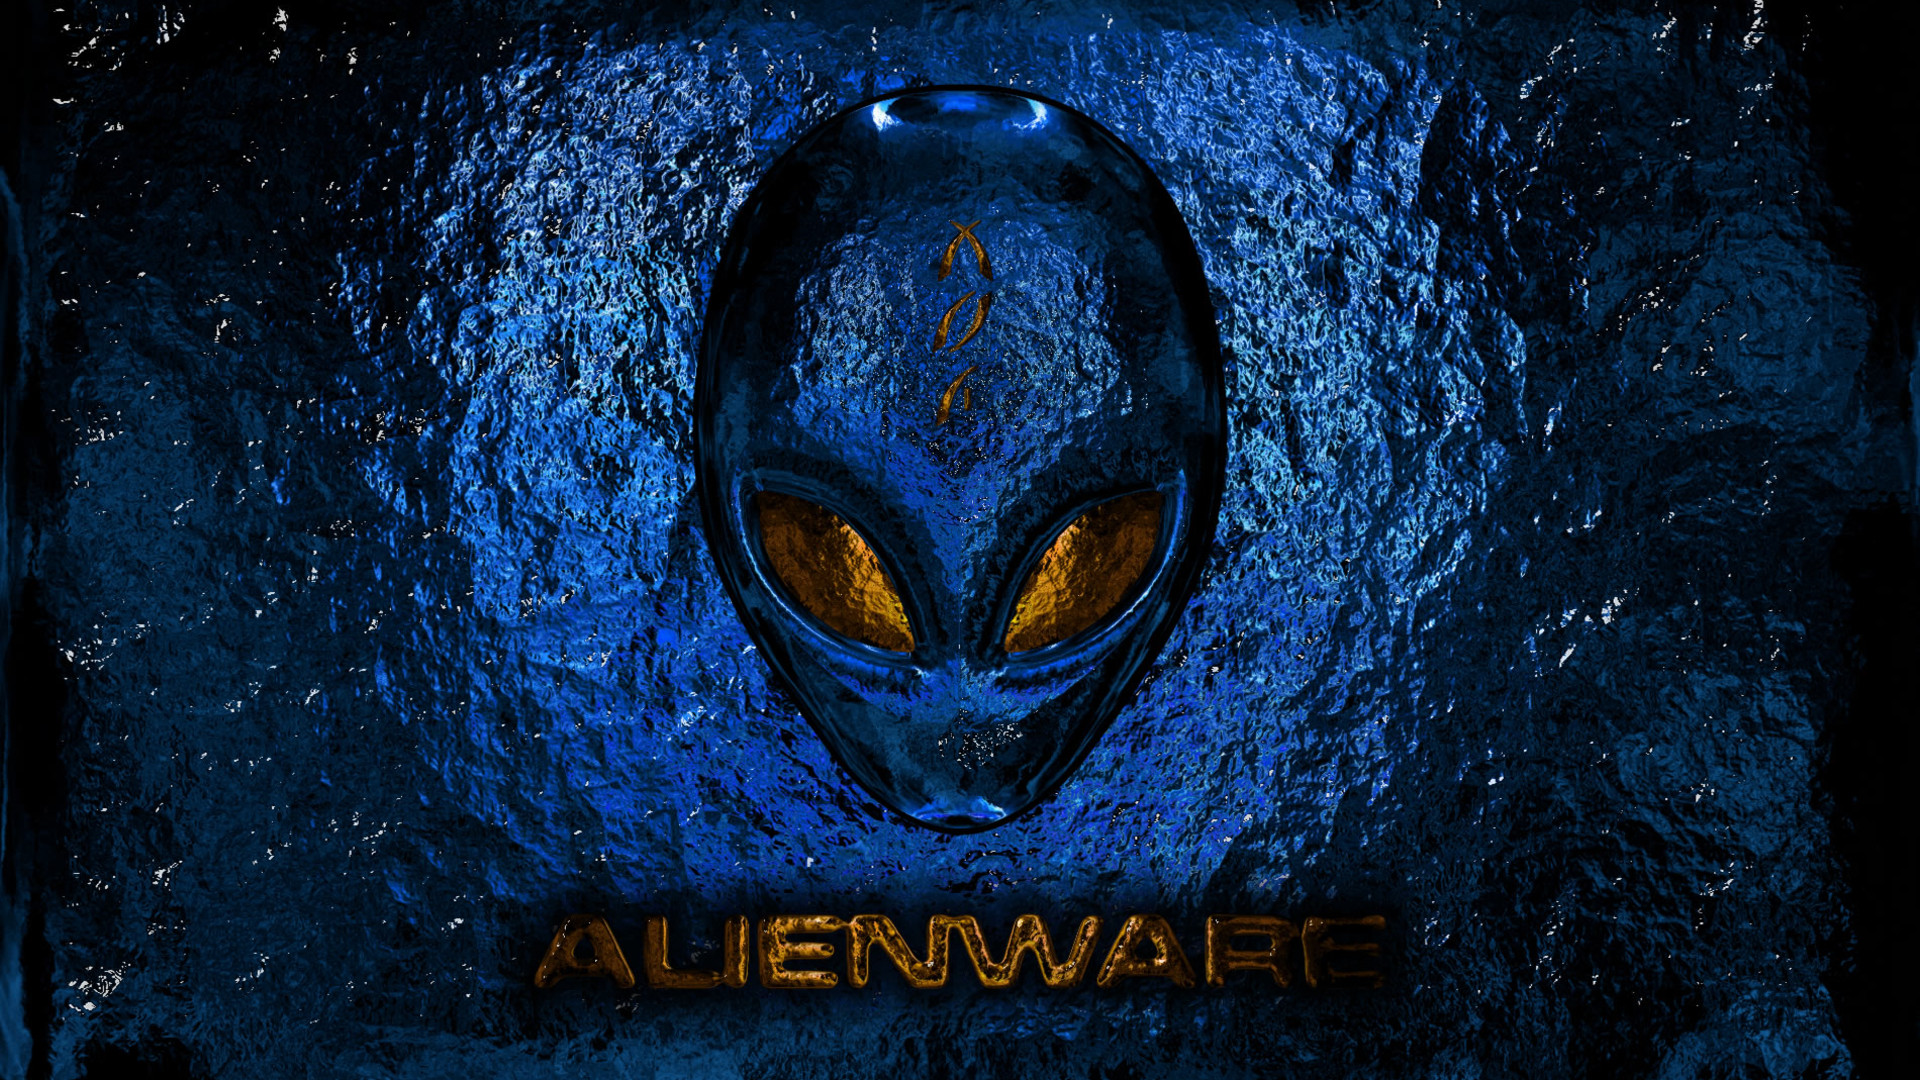 1920x1080 Alien - Area 51 | 1600x1200 Wallpaper ...